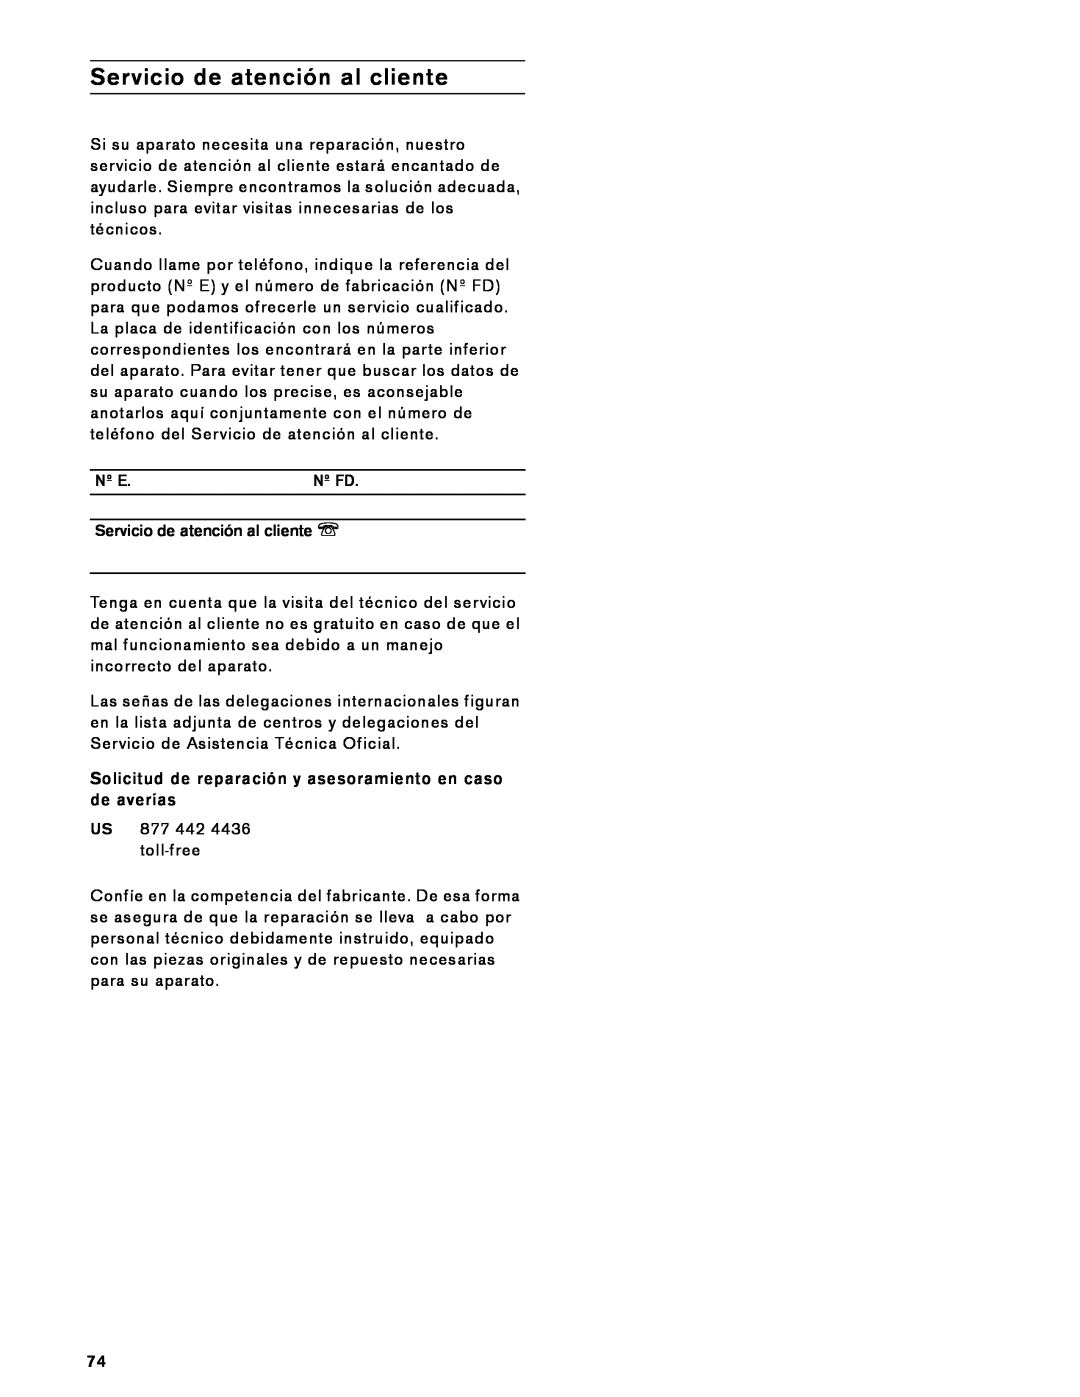 Gaggenau VK 230 714 manual Nº E, Nº Fd, Servicio de atención al cliente O 